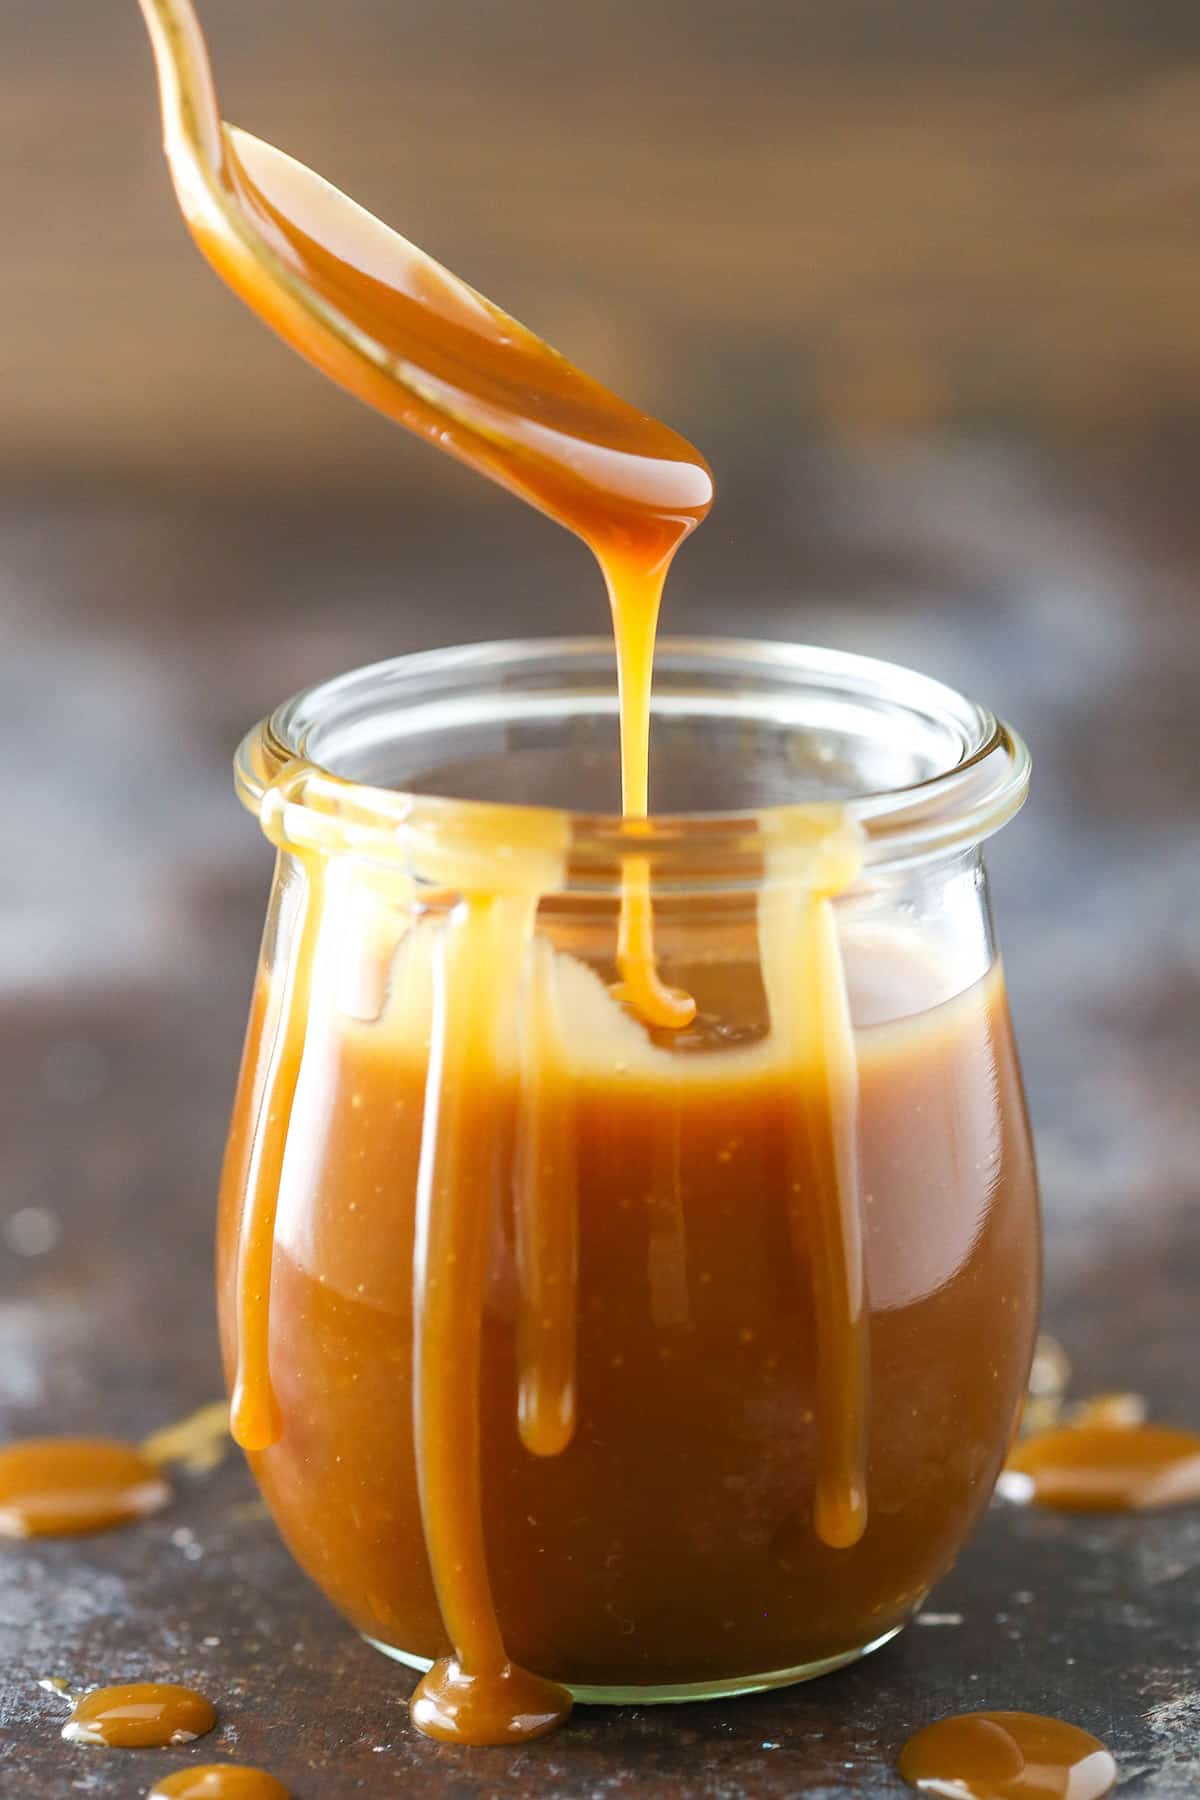 Caramel liquide DIAMIR 100% naturel 360g - Kibo